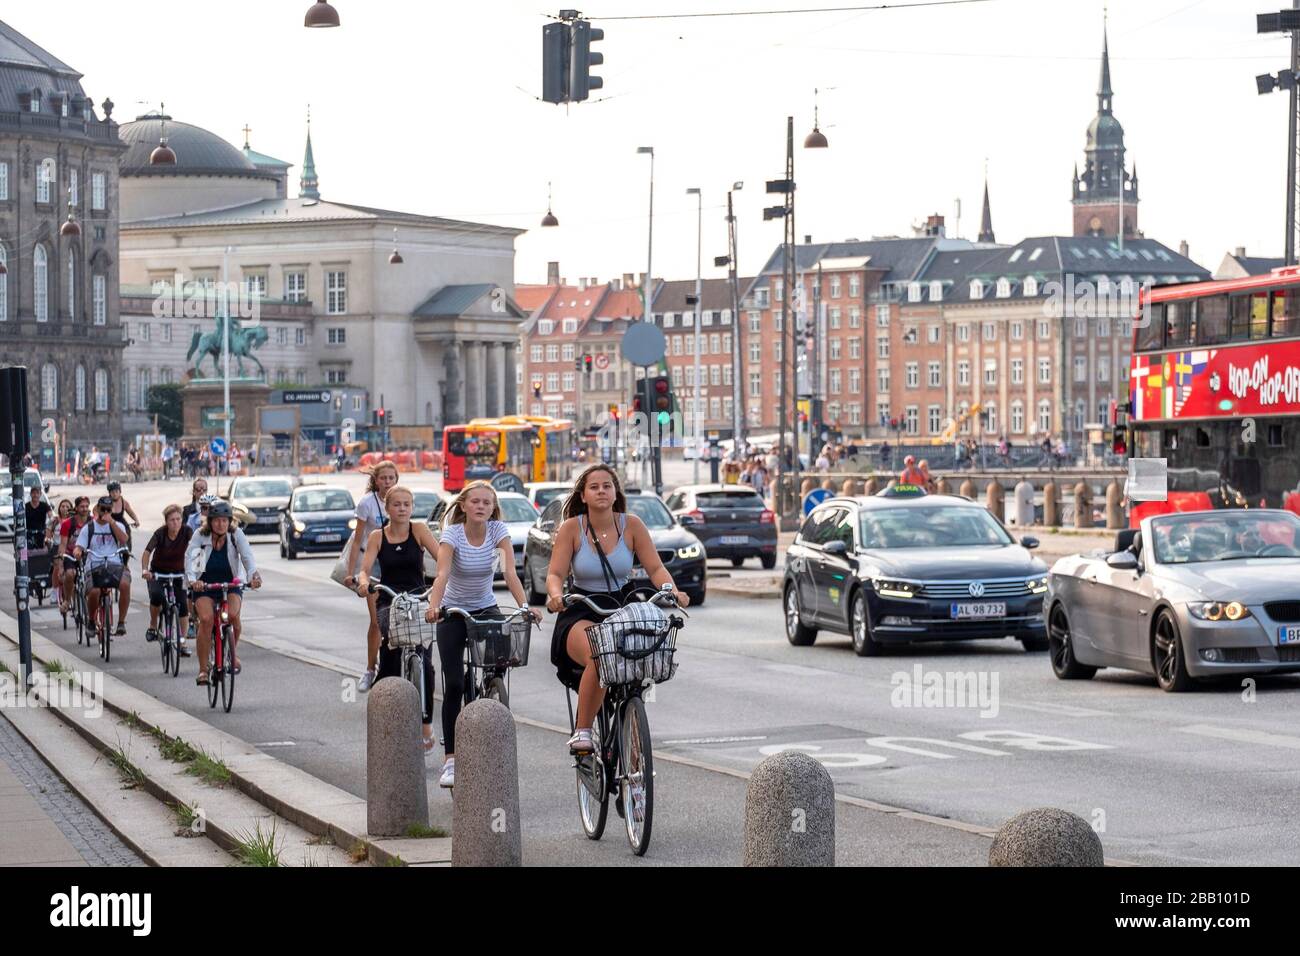 Les personnes qui parcourent des vélos dans les rues de Copenhague, Danemark, Europe Banque D'Images